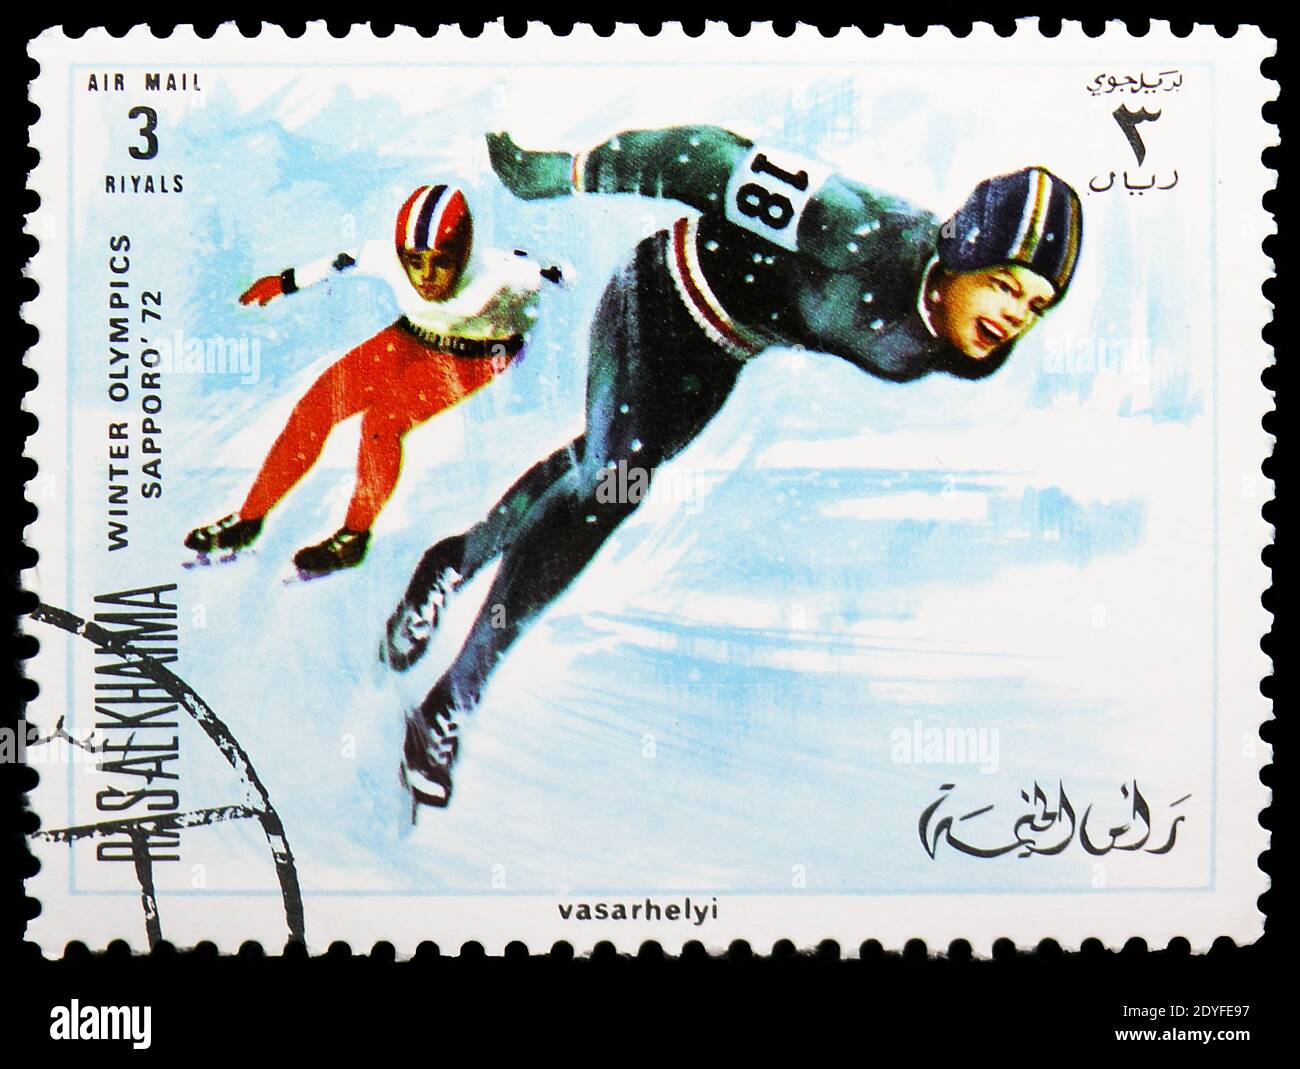 MOSKAU, RUSSLAND - 25. MAI 2019: Briefmarke gedruckt in Ras al Khaimah zeigt Skating, Olympische Winterspiele 1972, Sapporo Serie, um 1970 Stockfoto